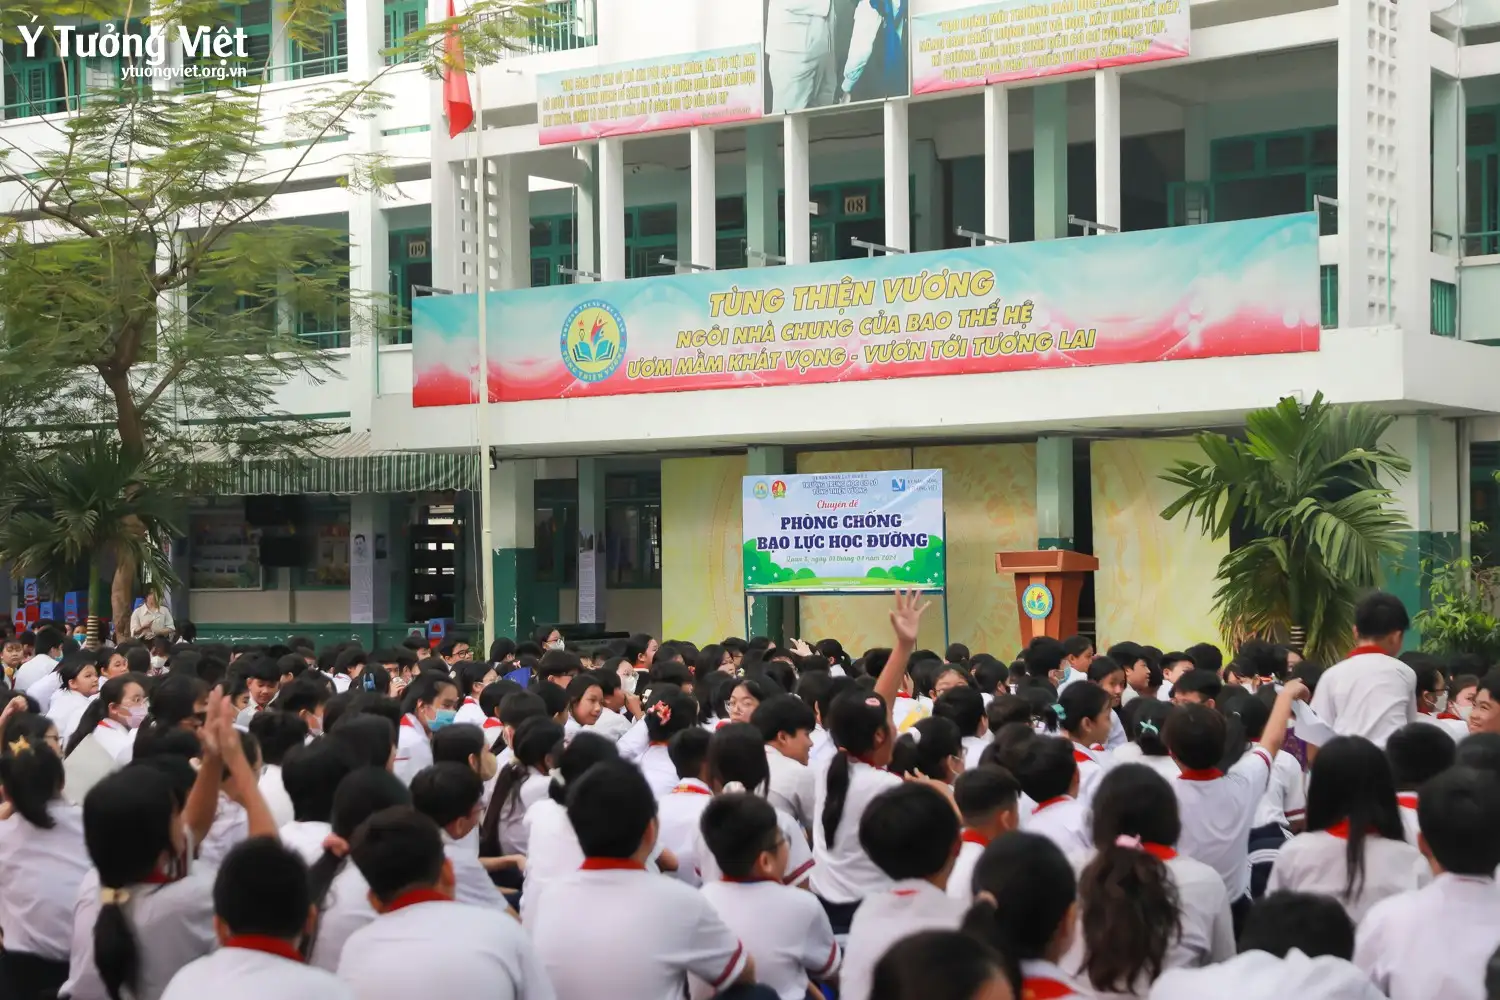 Nối dài hành trình phòng chống bạo lực học đường cùng trường THCS Tùng Thiện Vương